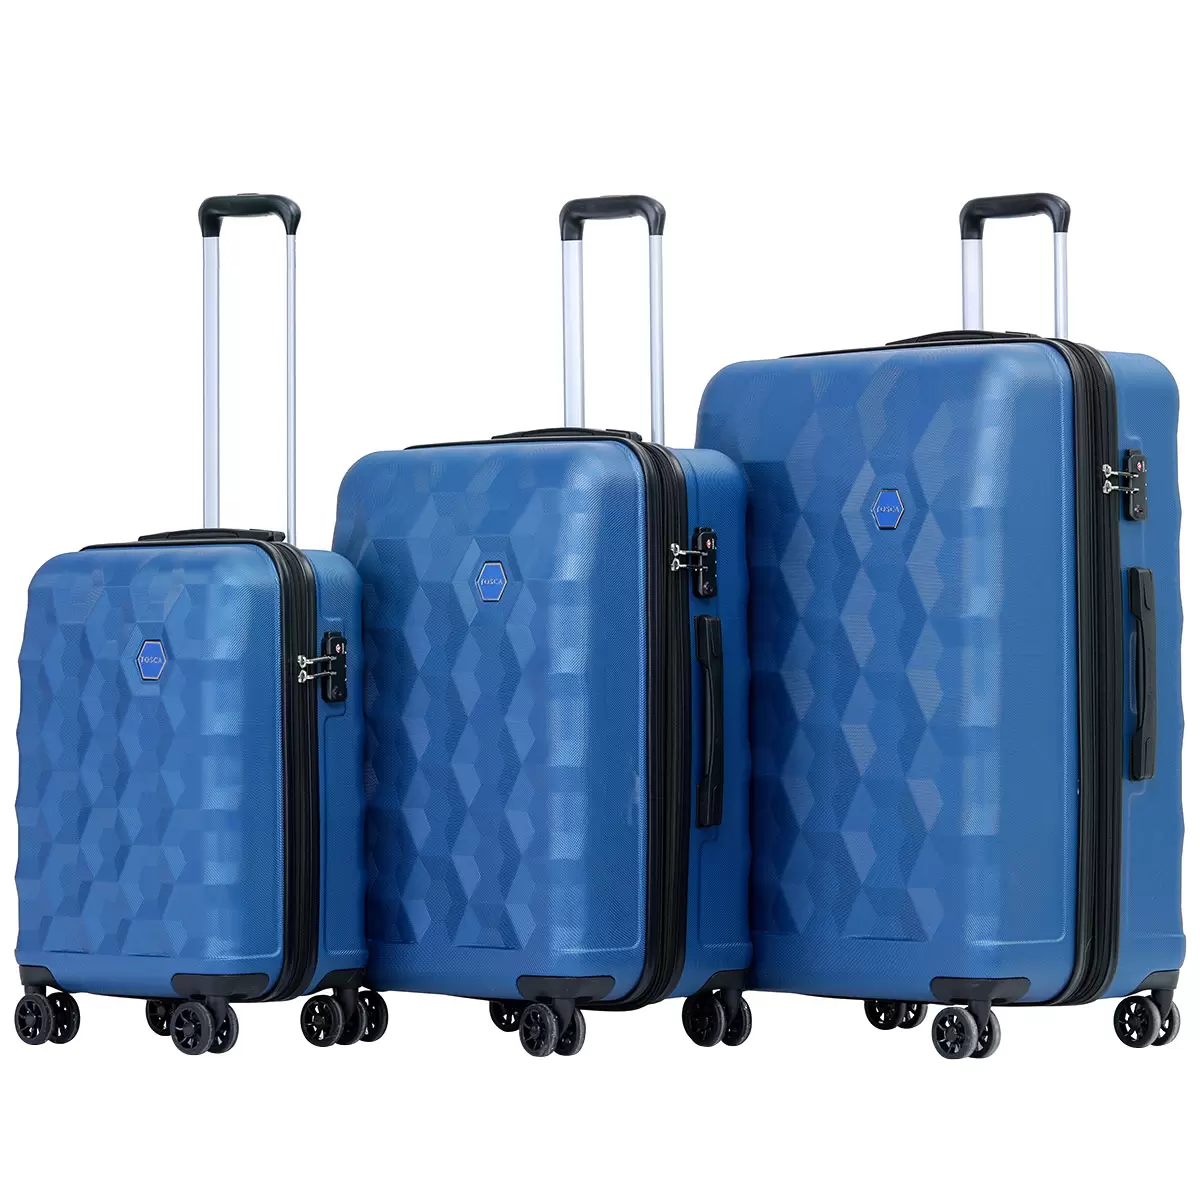 Tosca Bahamas Luggage 3 Piece Set Blue